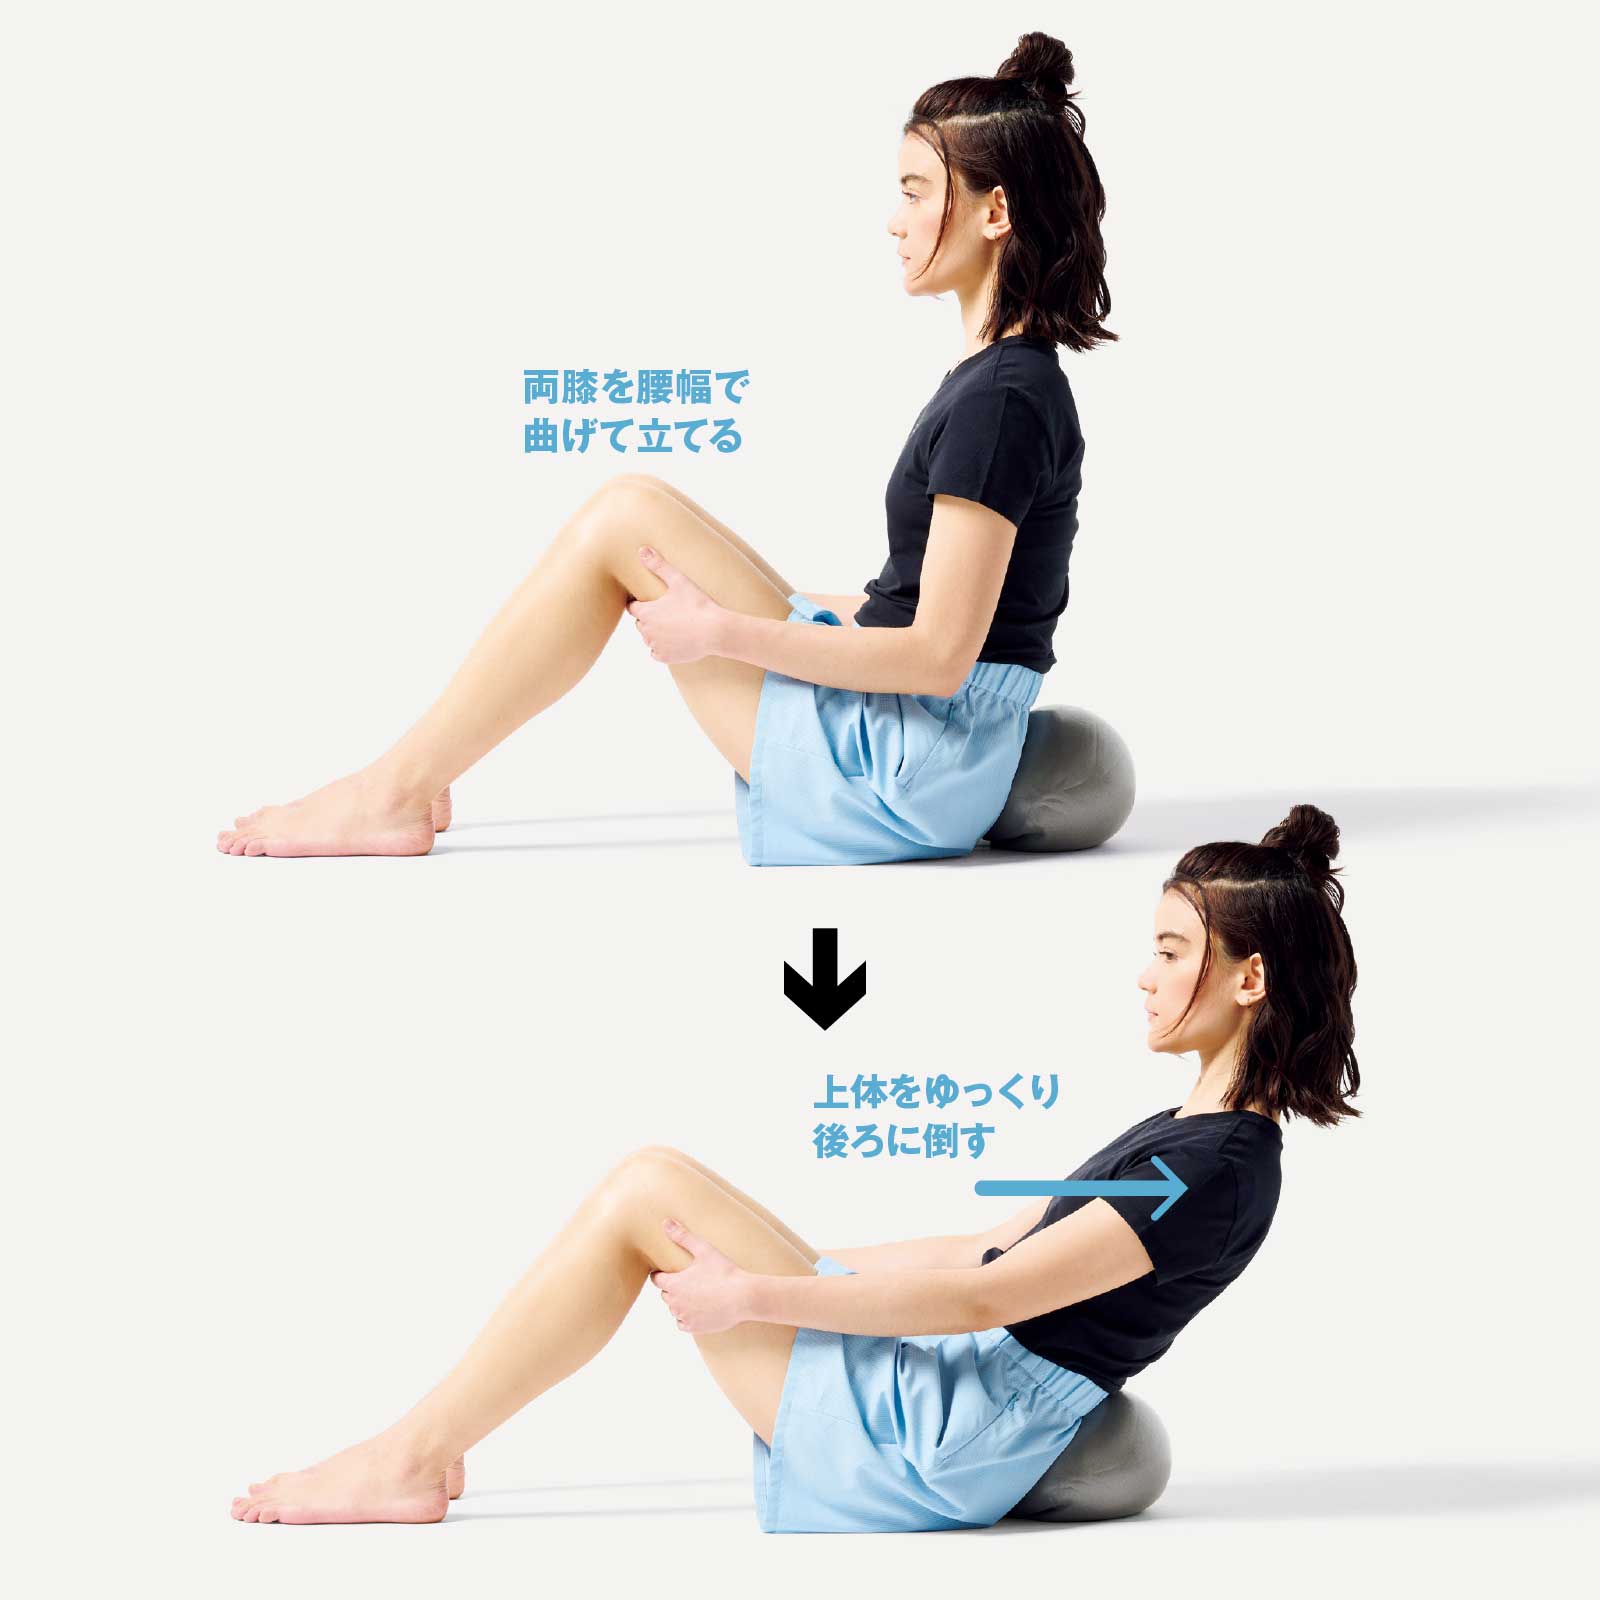 ミニボールエクササイズ 基礎編 腹 へこむ 床で坐って4ステップの腹圧トレーニング